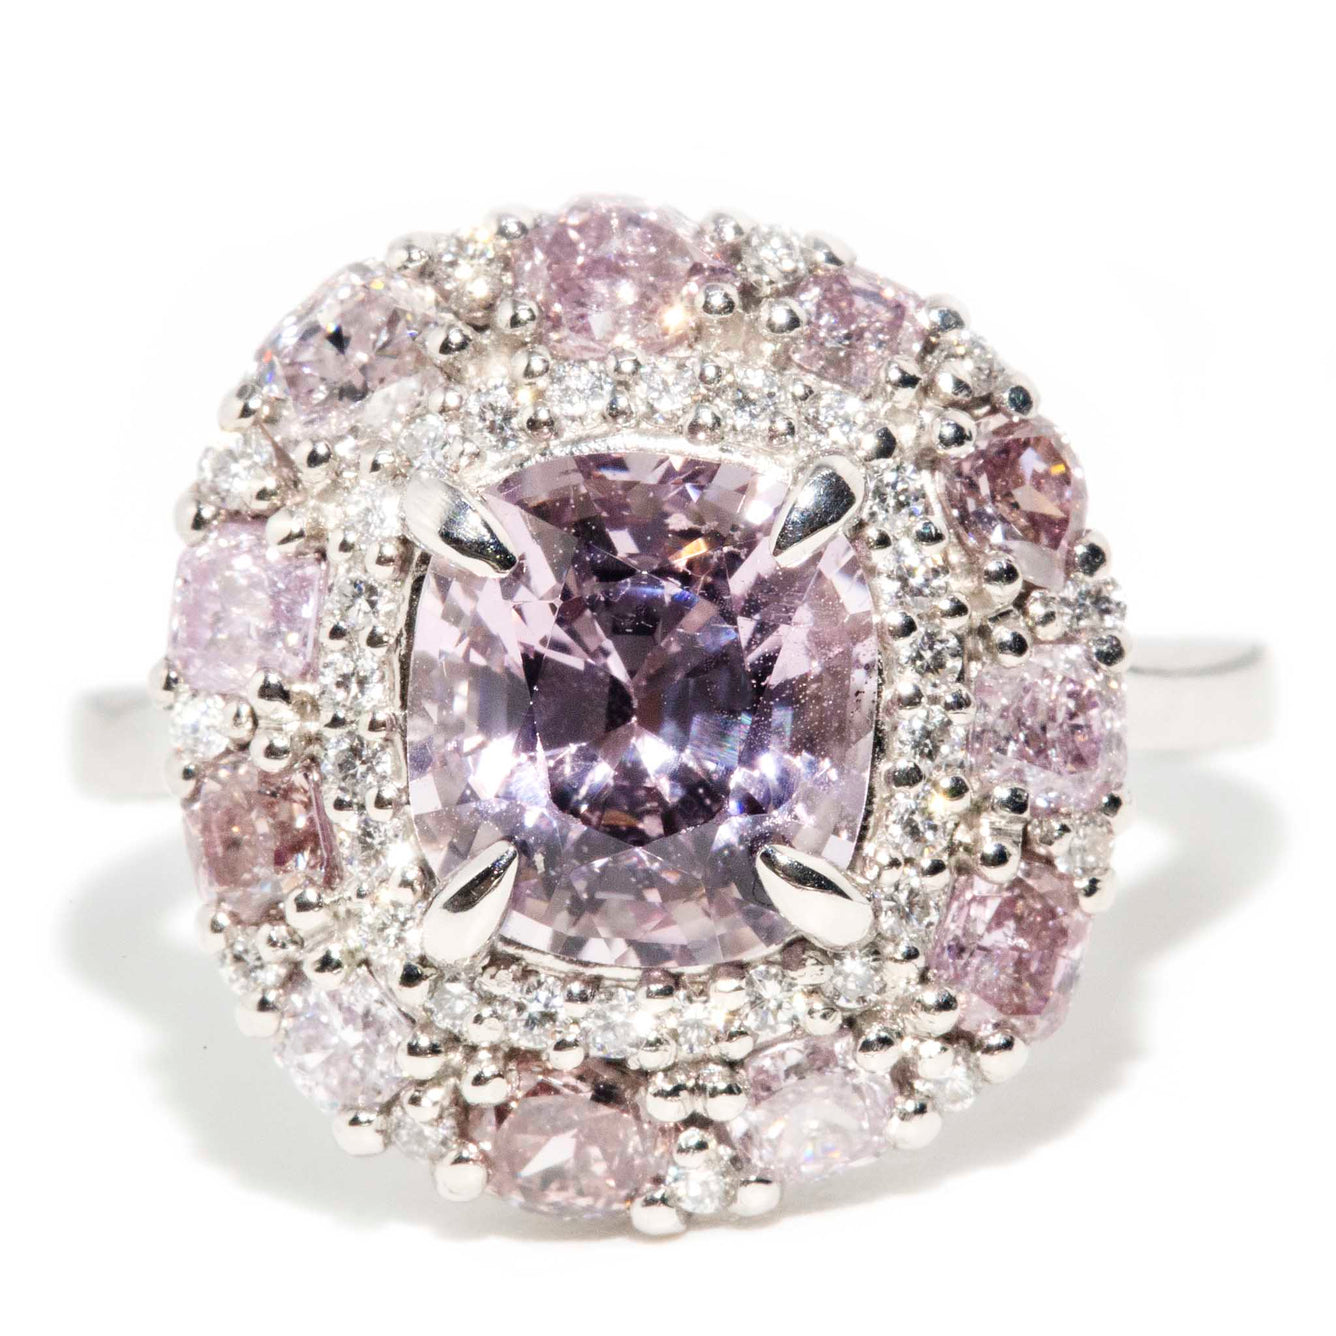 Lavender Violet Spinel Ring | Unique rings, Gem ring, Spinel ring